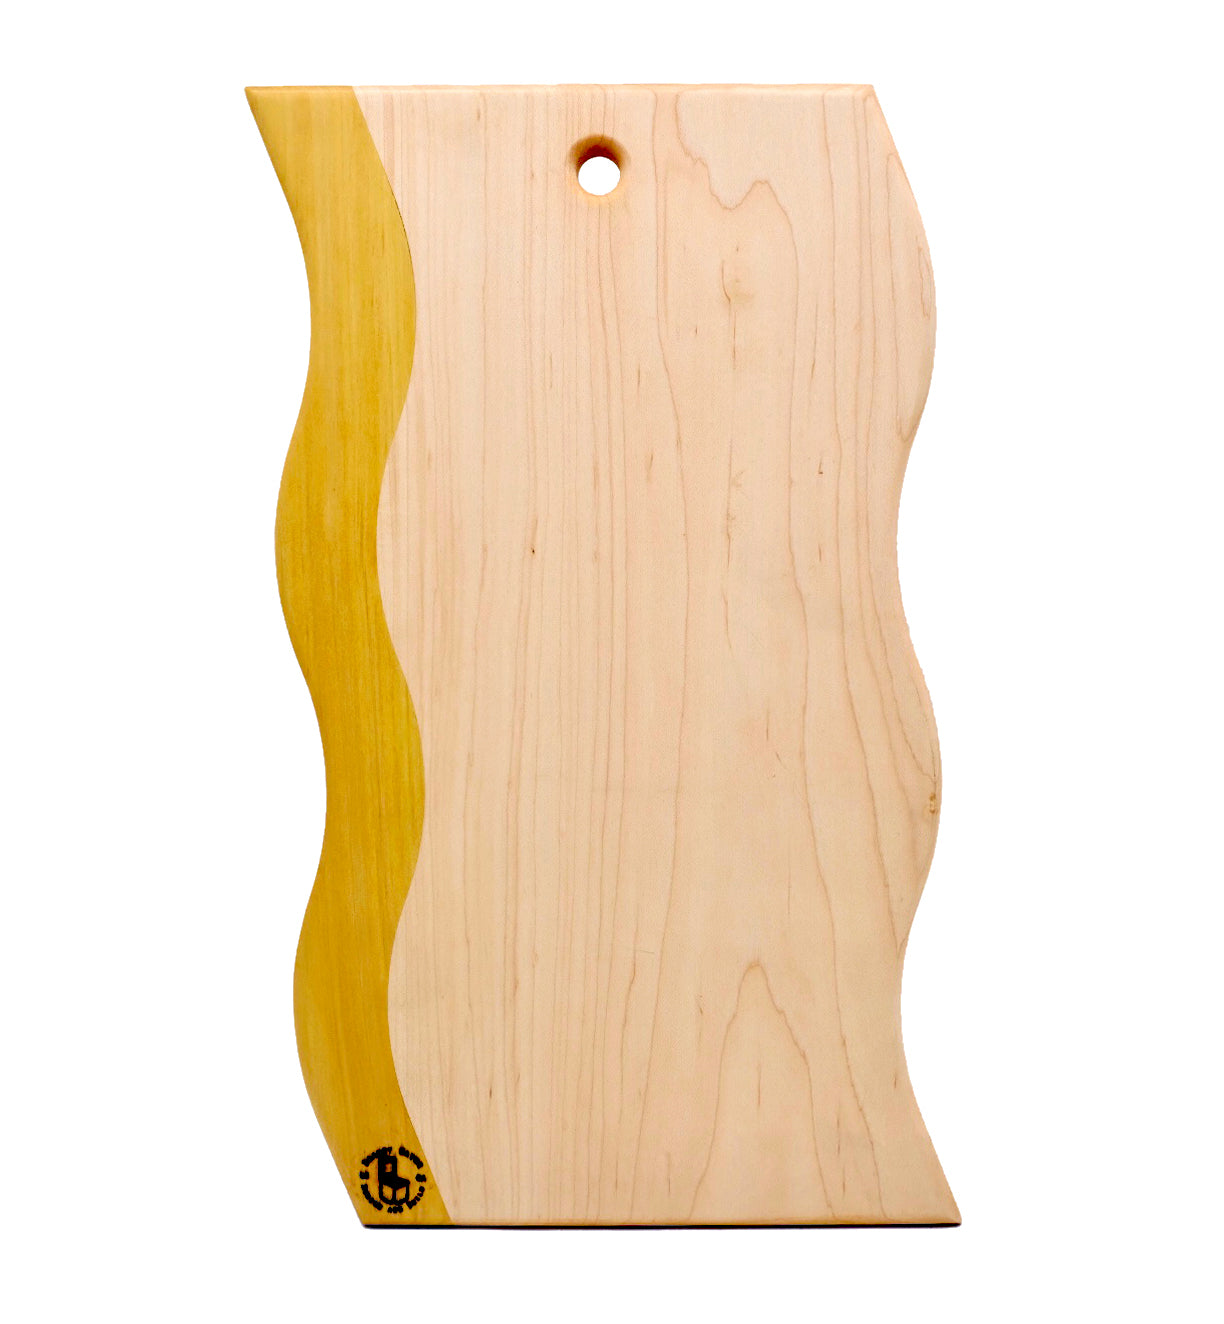 Wiggle cutting boardwiggle shaped cutting board